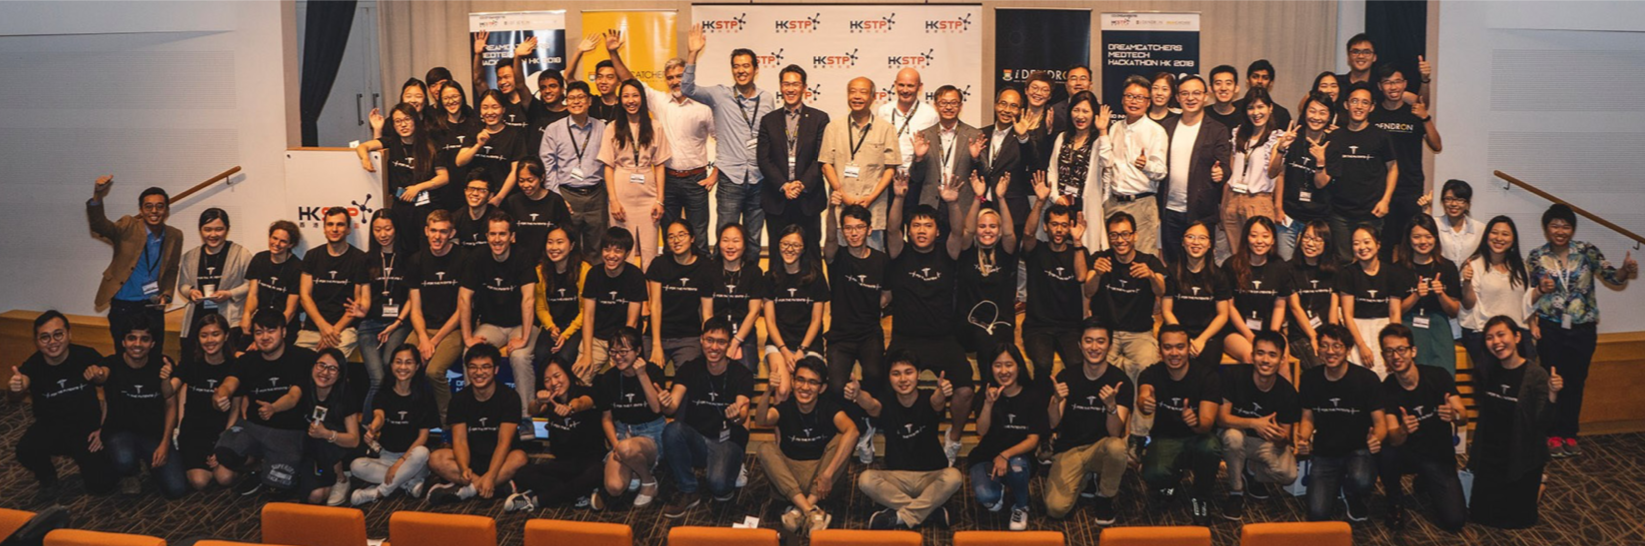 HKU DreamCatchers MedTech Hackathon Hong Kong 2018